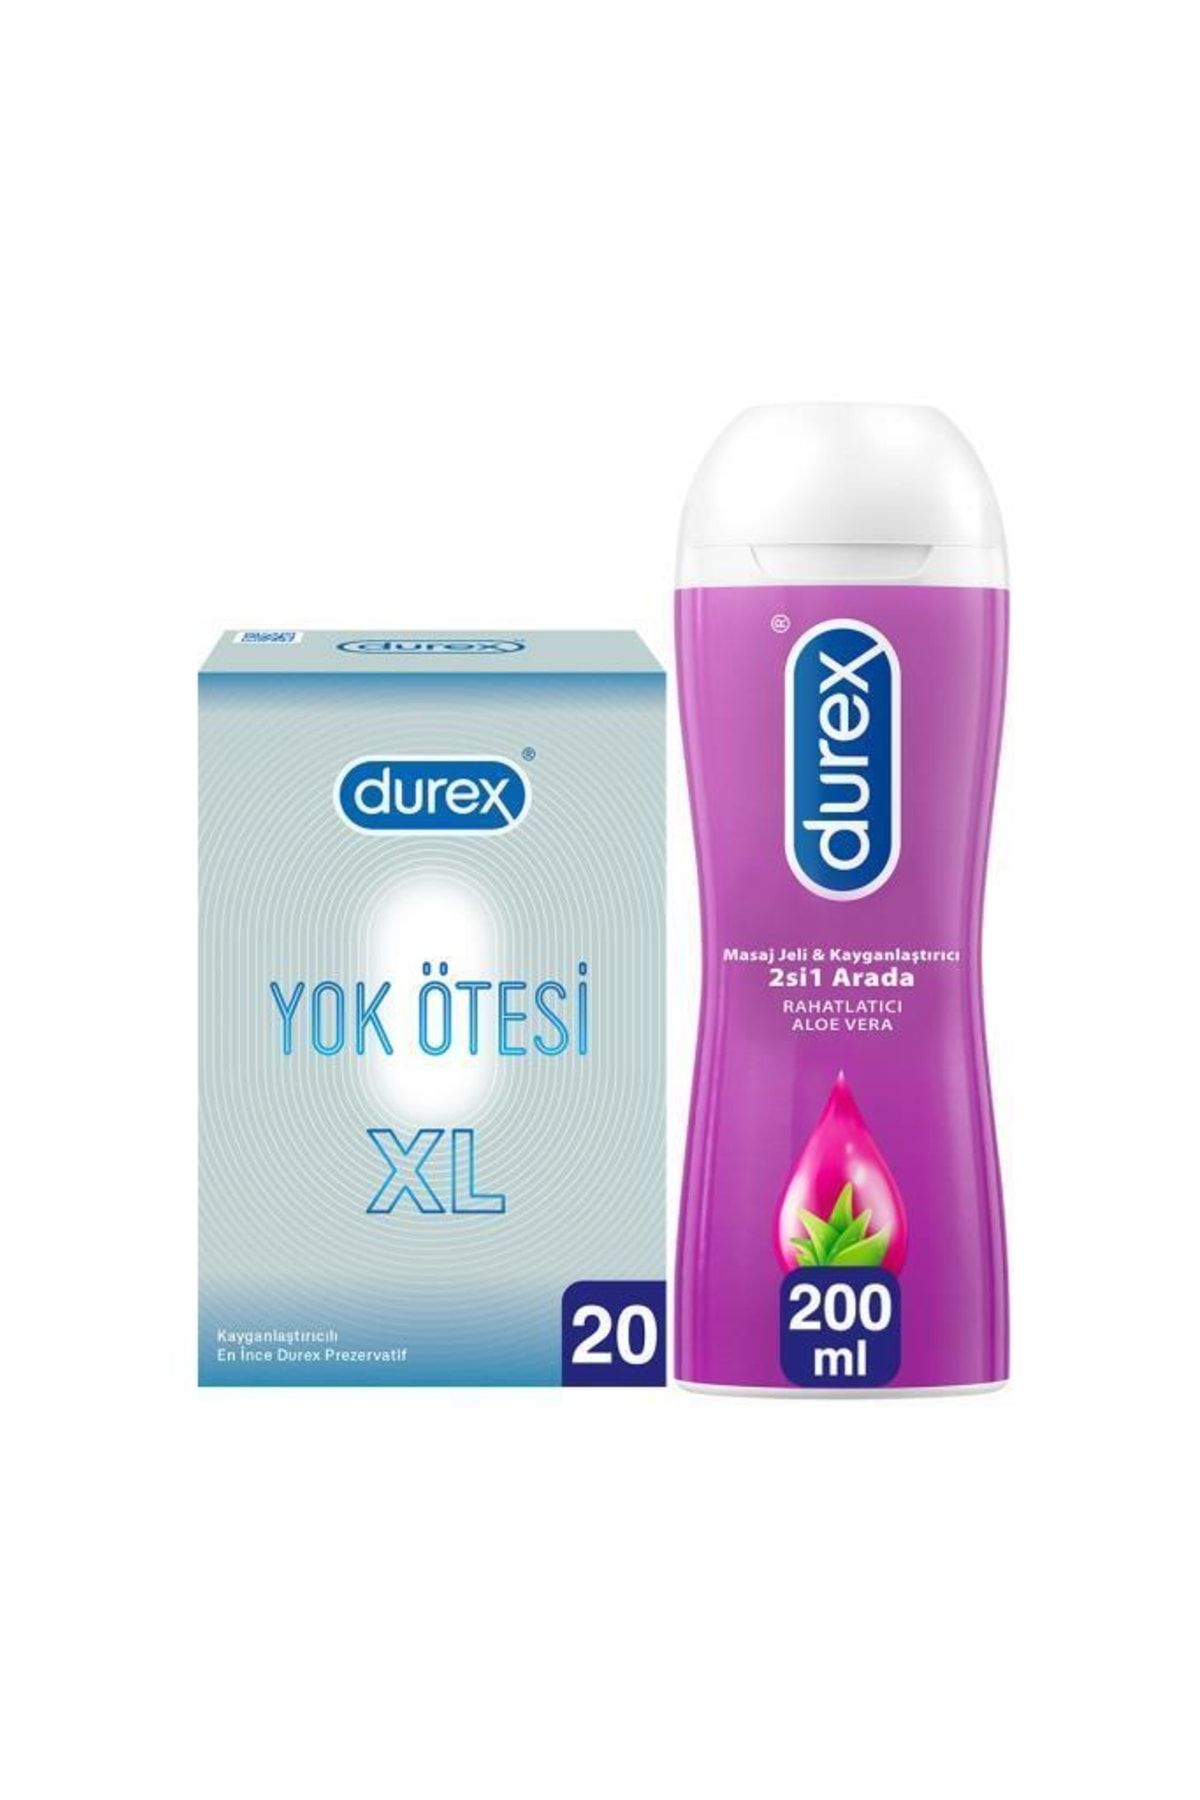 Durex Yok Ötesi Xl 20'li Ince Prezervatif + Aloe Vera Kayganlaştırıcı Jel 200ml